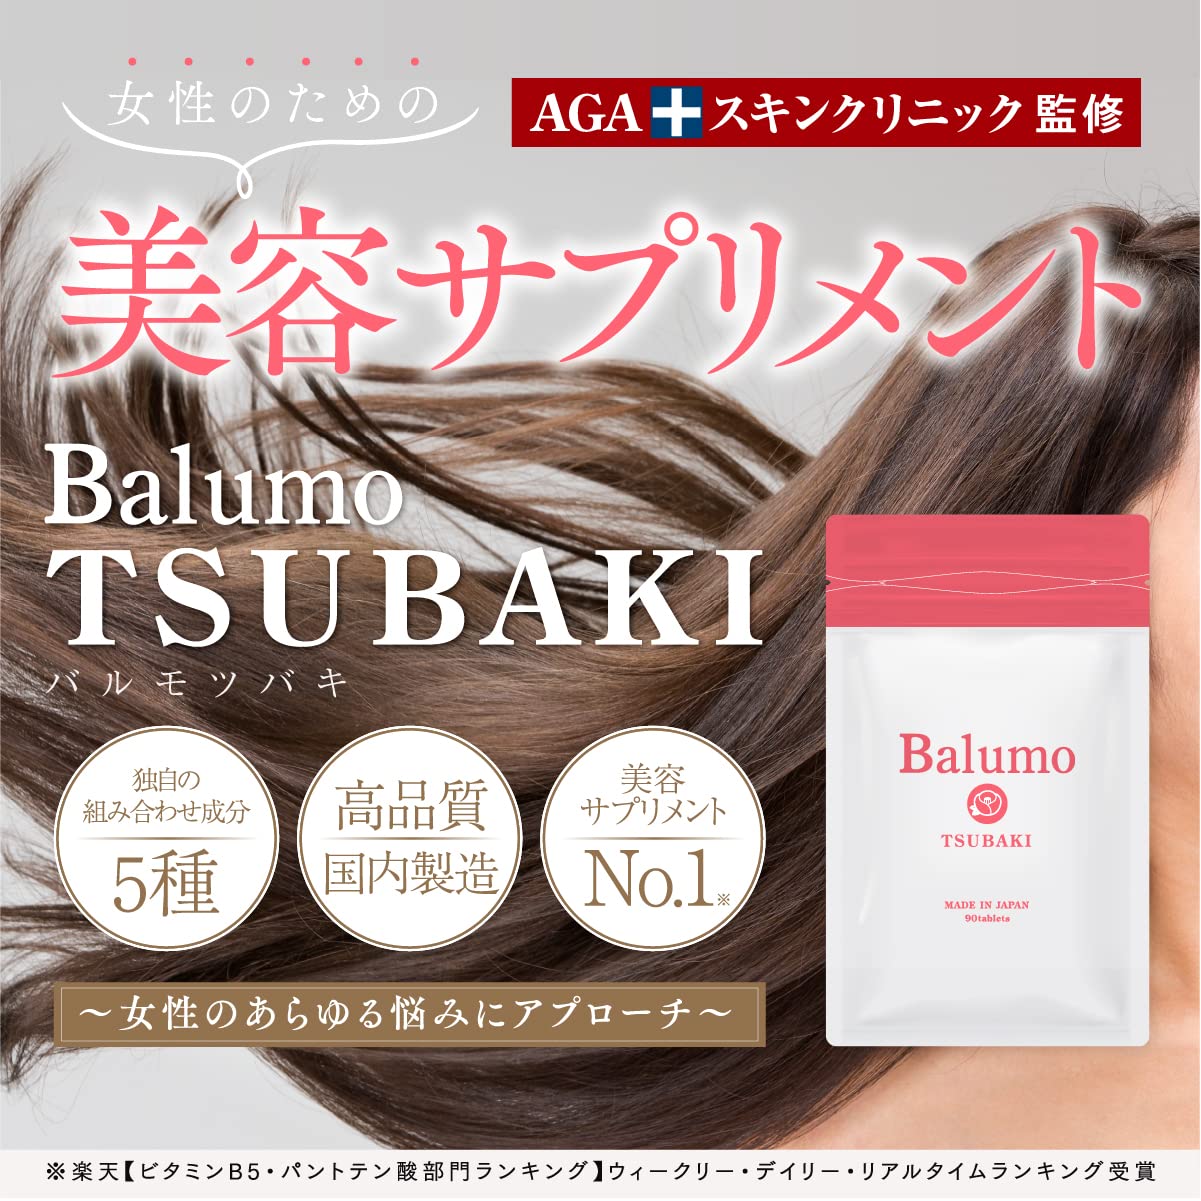 Balumo TSUBAKI - アロマグッズ